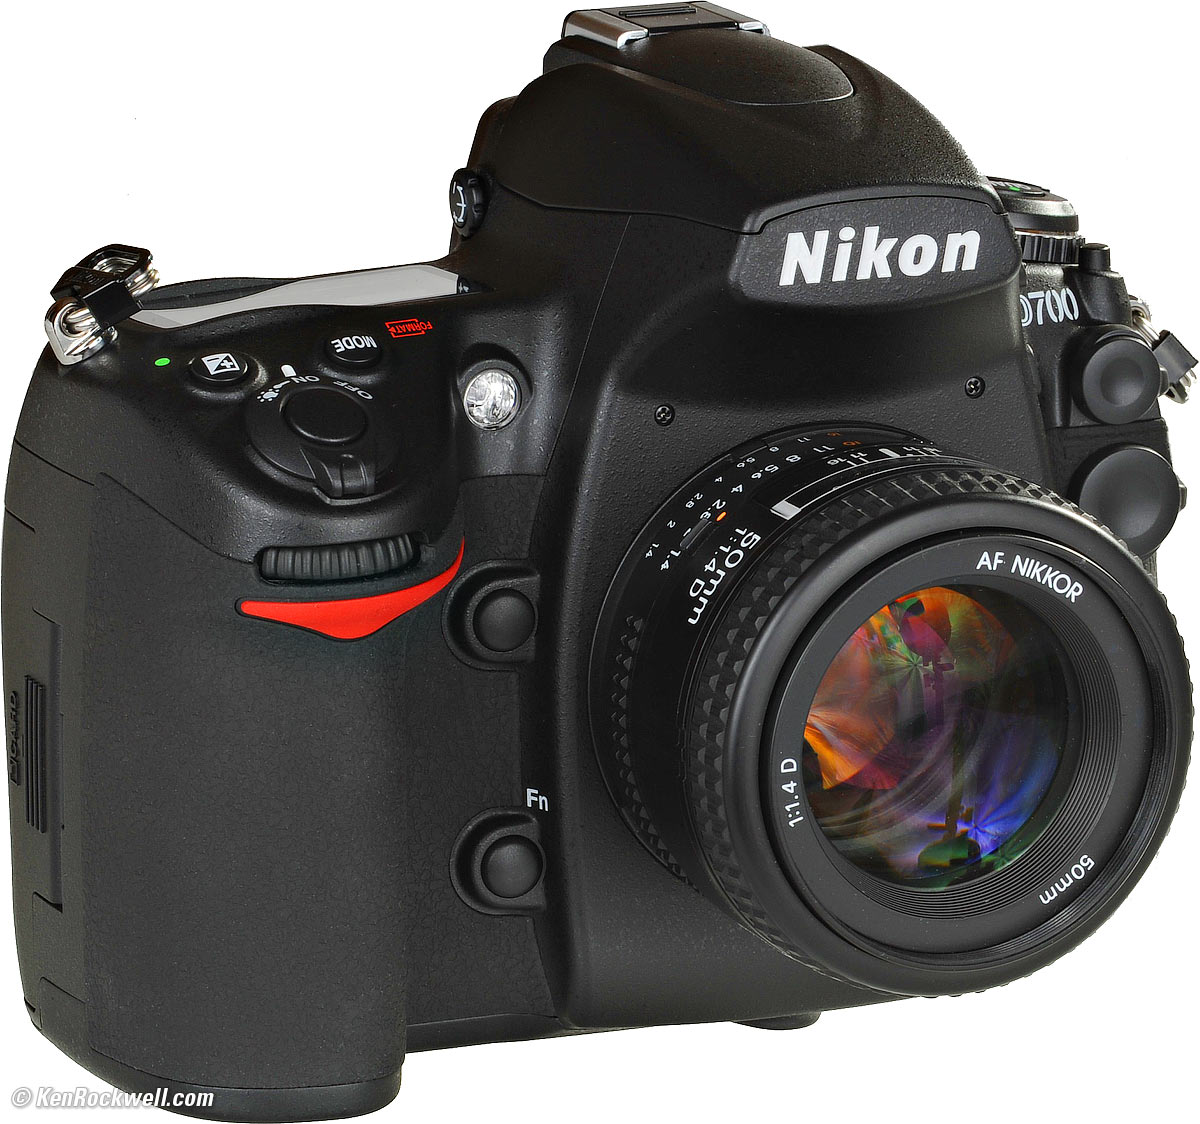 Nikon DSLR D700 (FX)